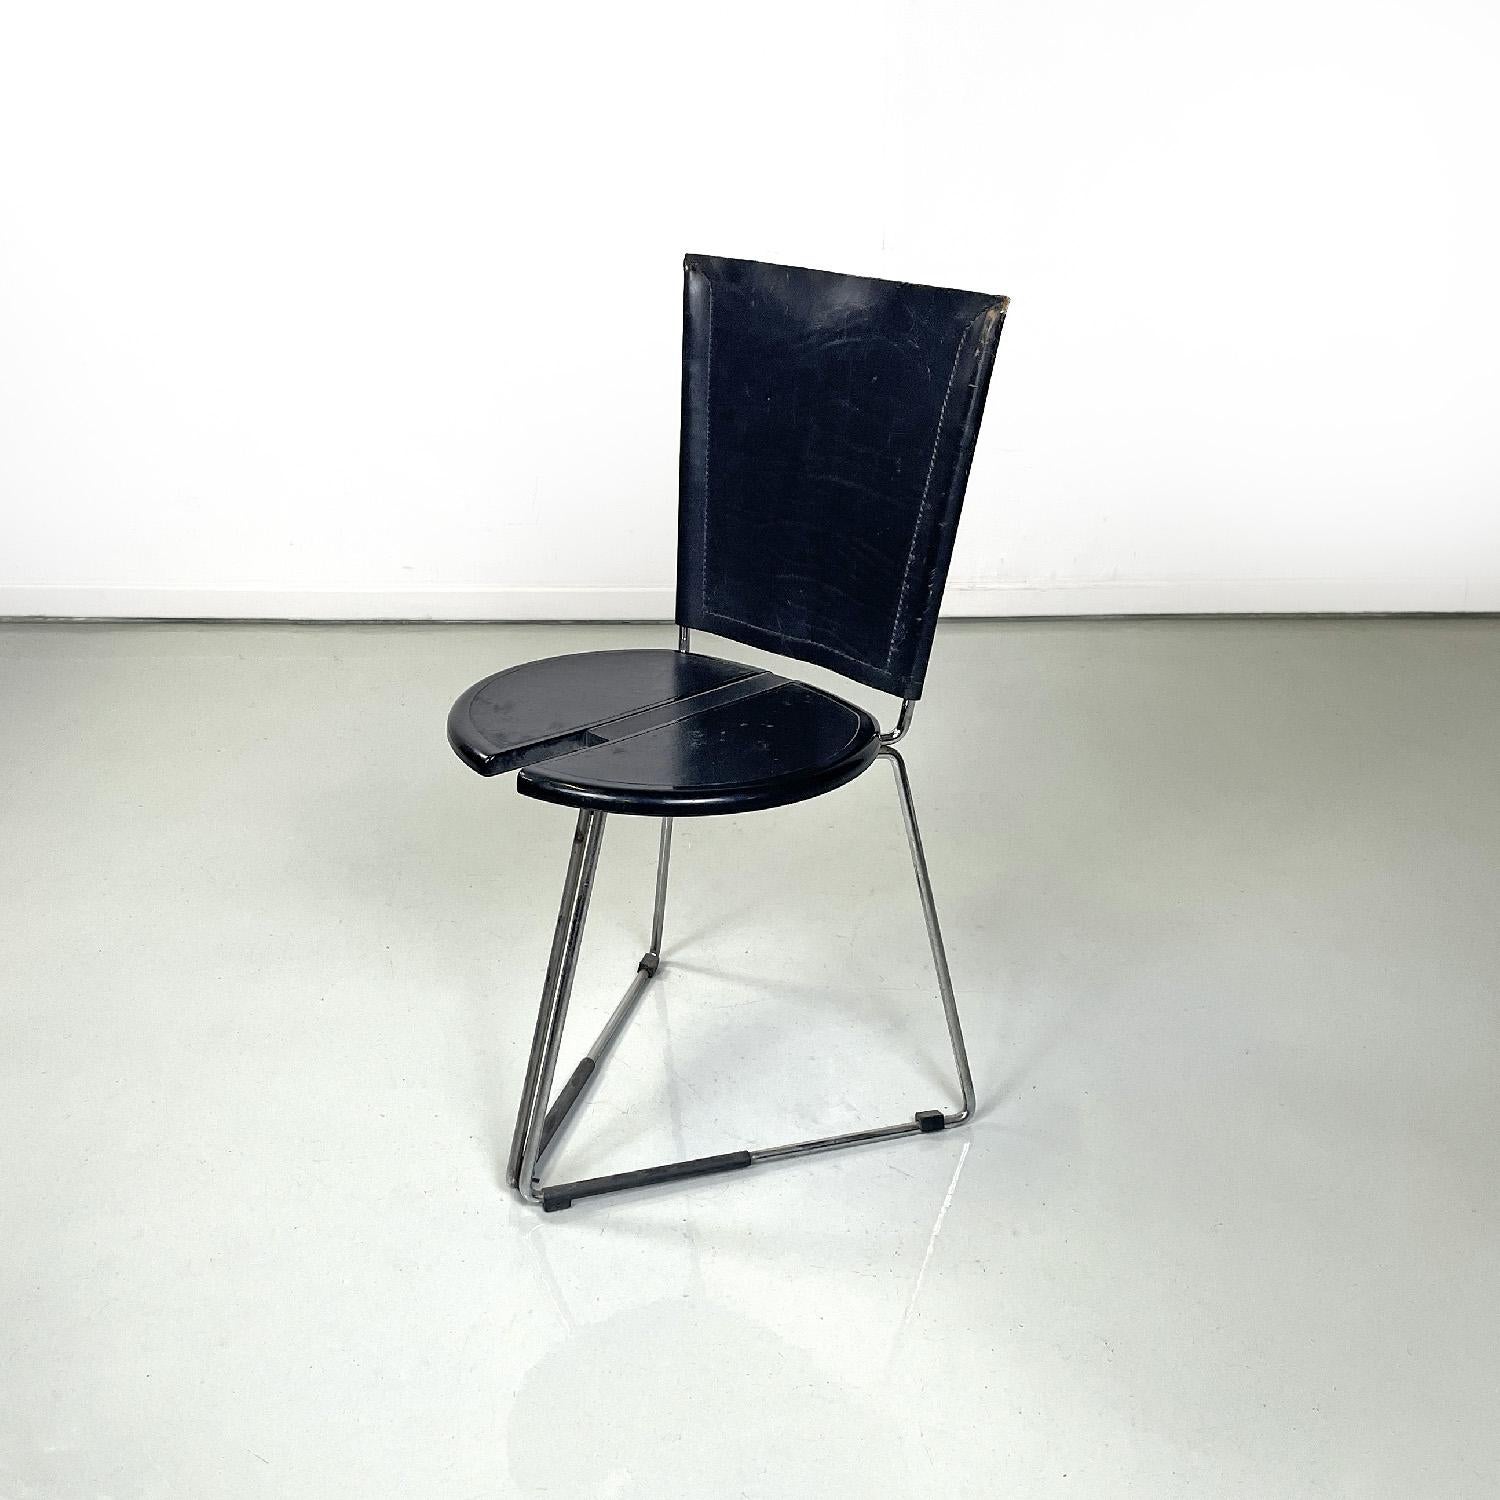 Chaise moderne italienne Terna par Gaspare Cairoli pour Seccose, 1980
Chaise mod. Terna avec base triangulaire. Le siège est rond, en plastique noir, avec deux parties semi-circulaires recouvertes de cuir noir et doté d'une cavité. Le dossier est en